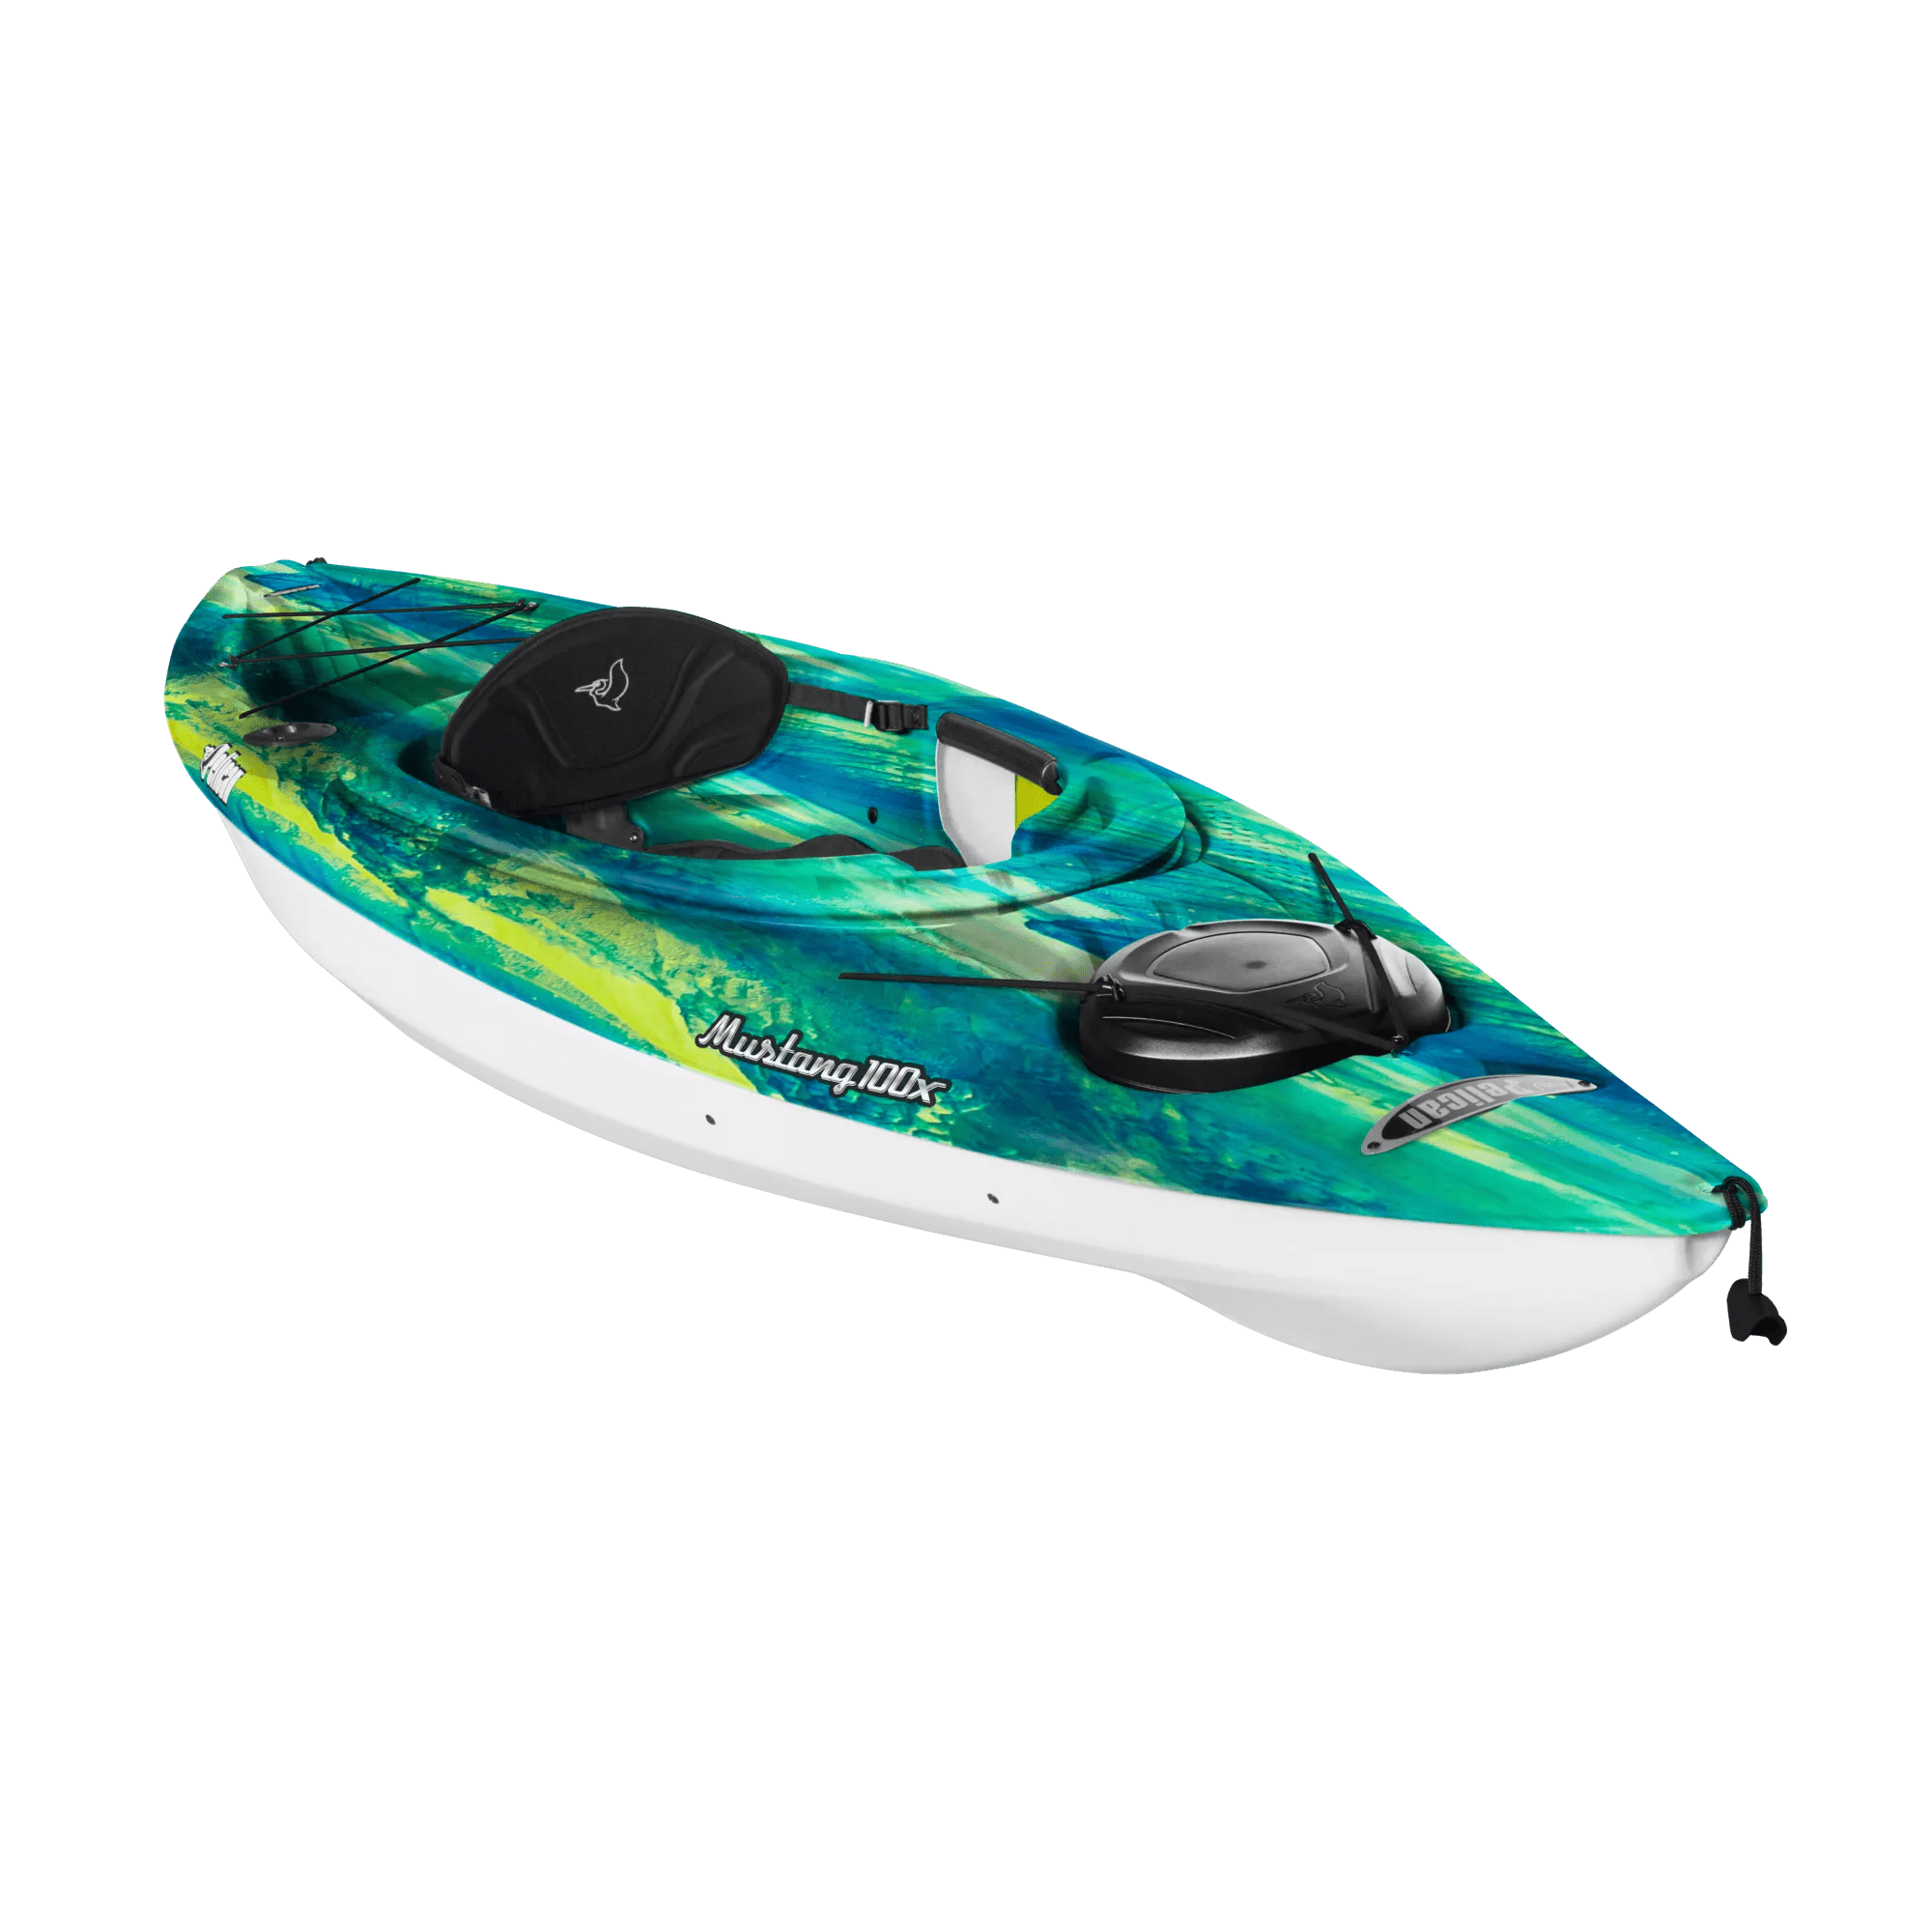 PELICAN - Mustang 100X Recreational Kayak - Blue - KYF10P102 - ISO 